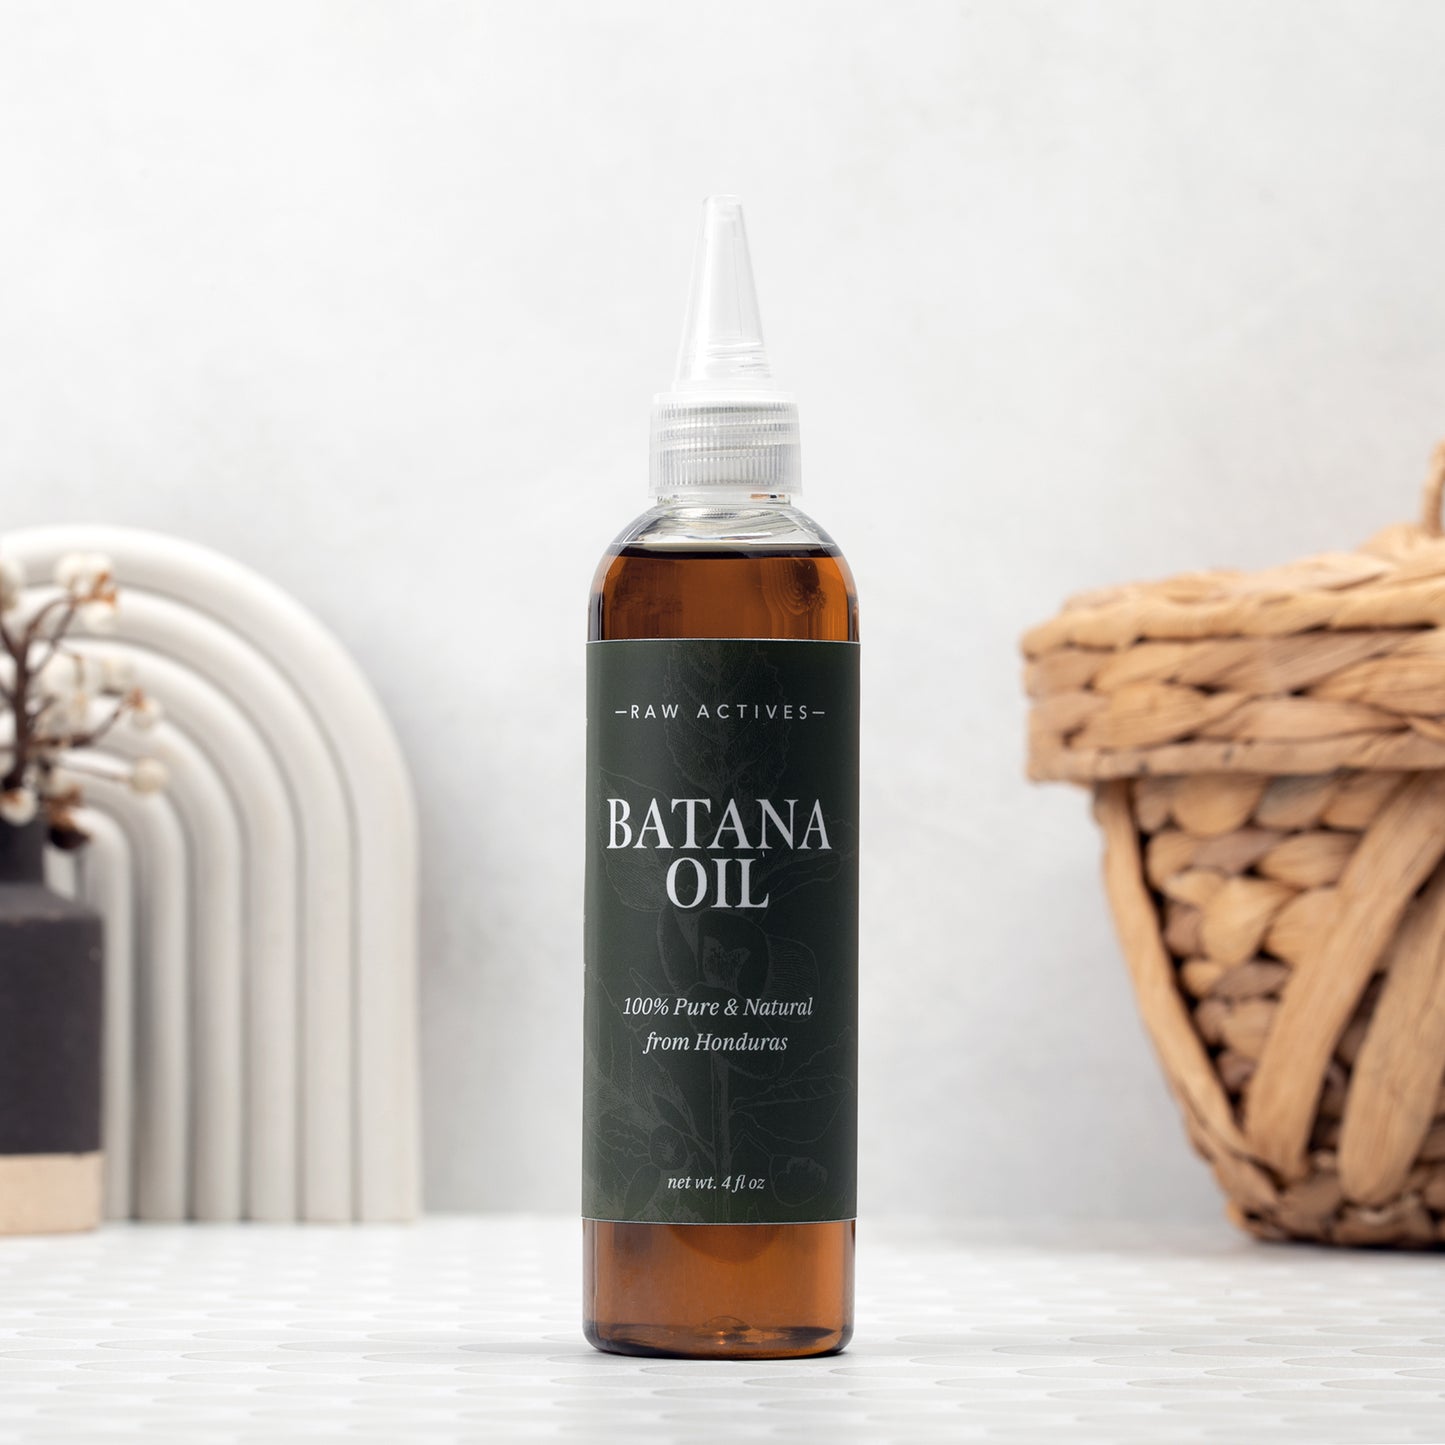 Batana Oil for Hair Growth, 100% Natural from Honduras